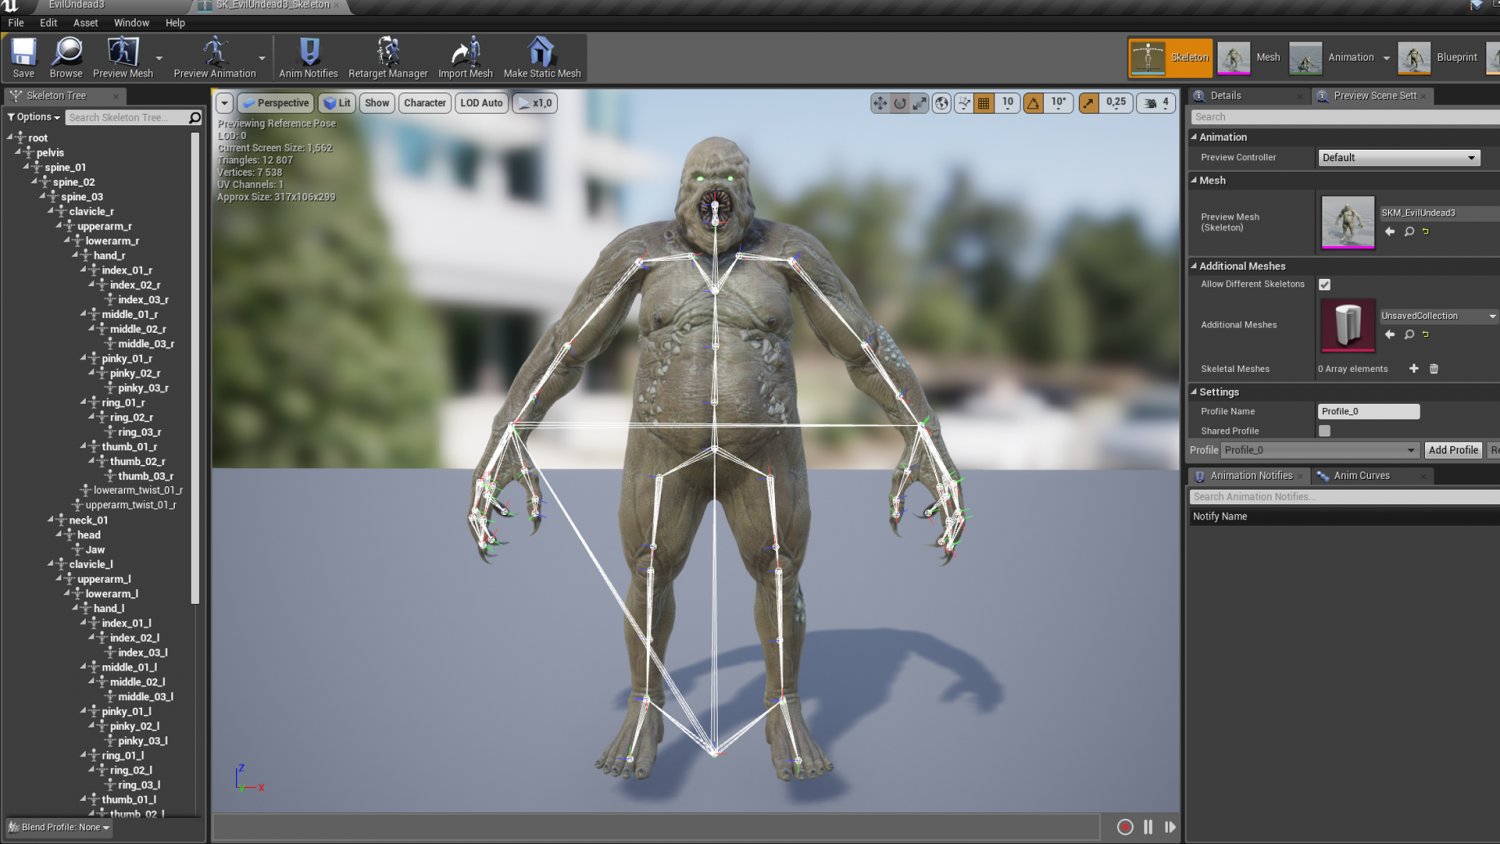 Evil Undead 4 3D Model in Monster 3DExport